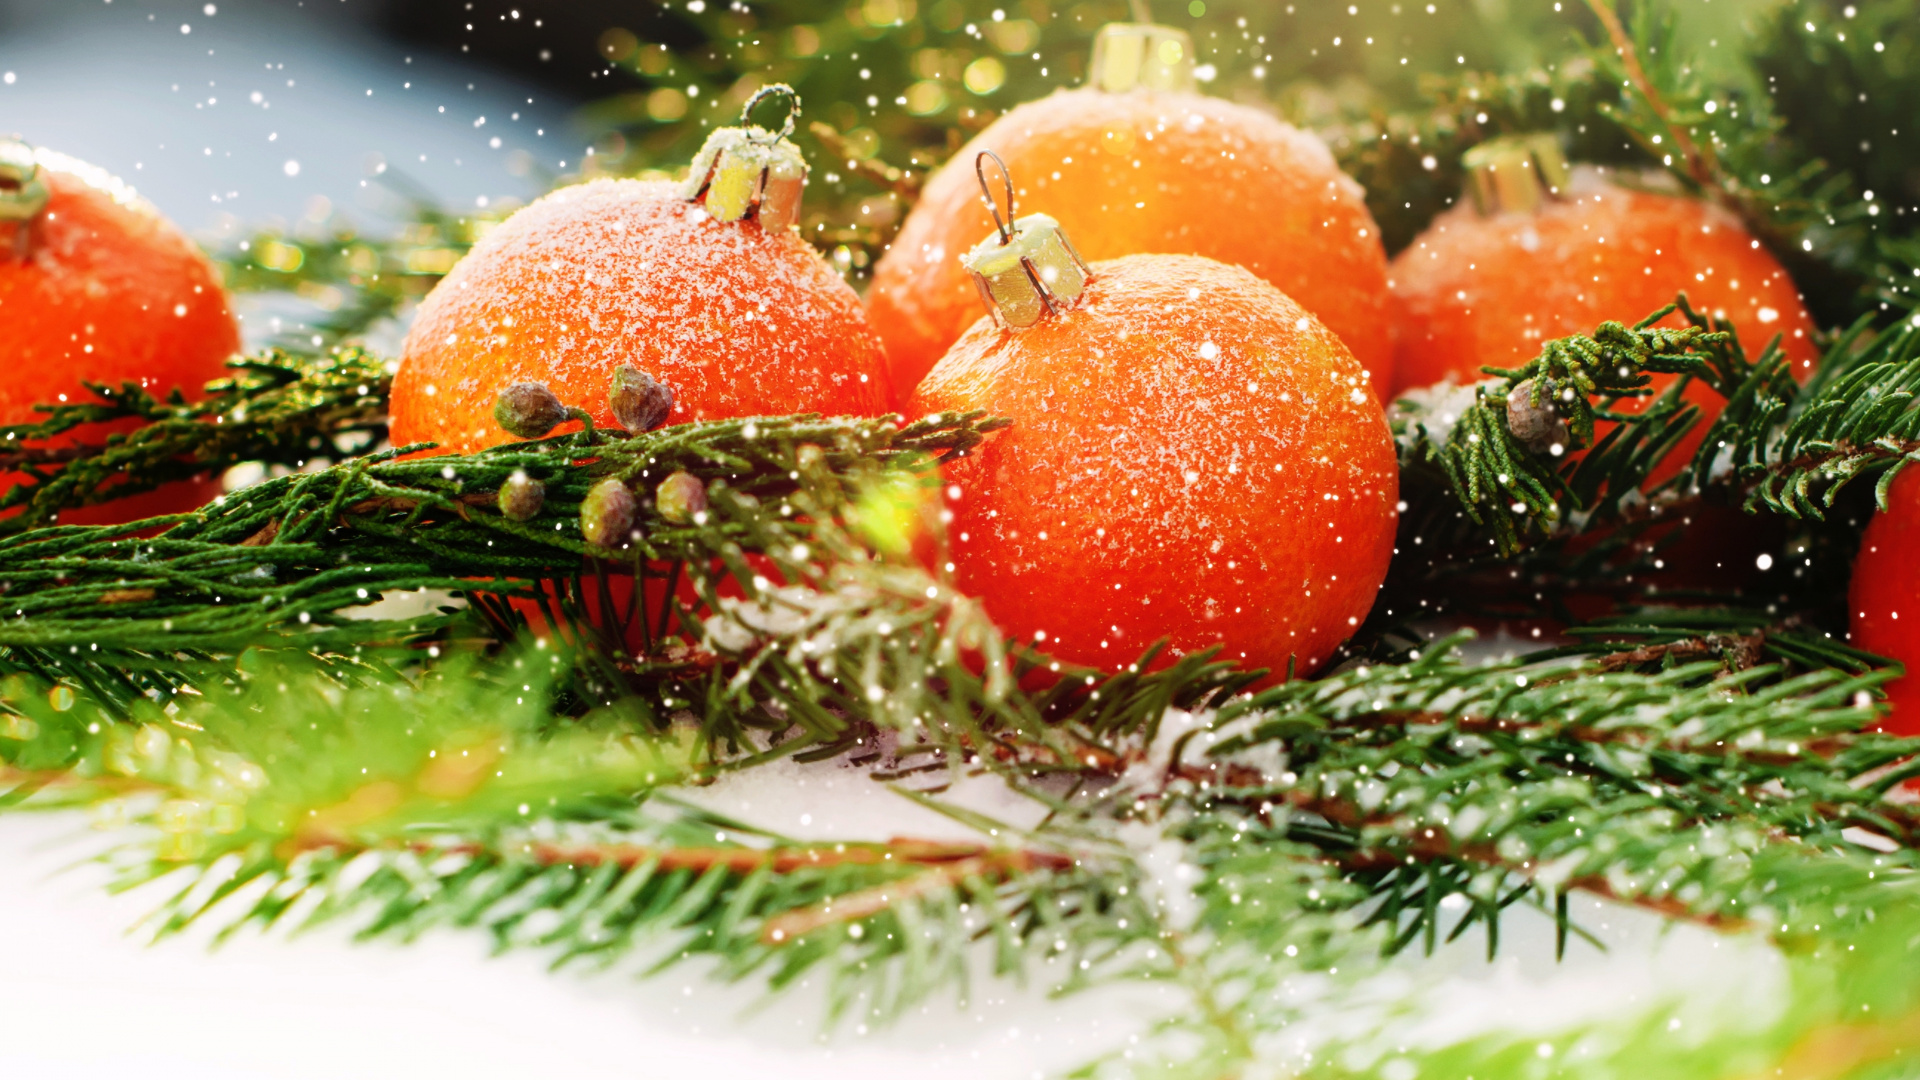 Weihnachten, Neujahr, Vegetarisches Essen, Lebensmittel, Natürliche Lebensmittel. Wallpaper in 1920x1080 Resolution